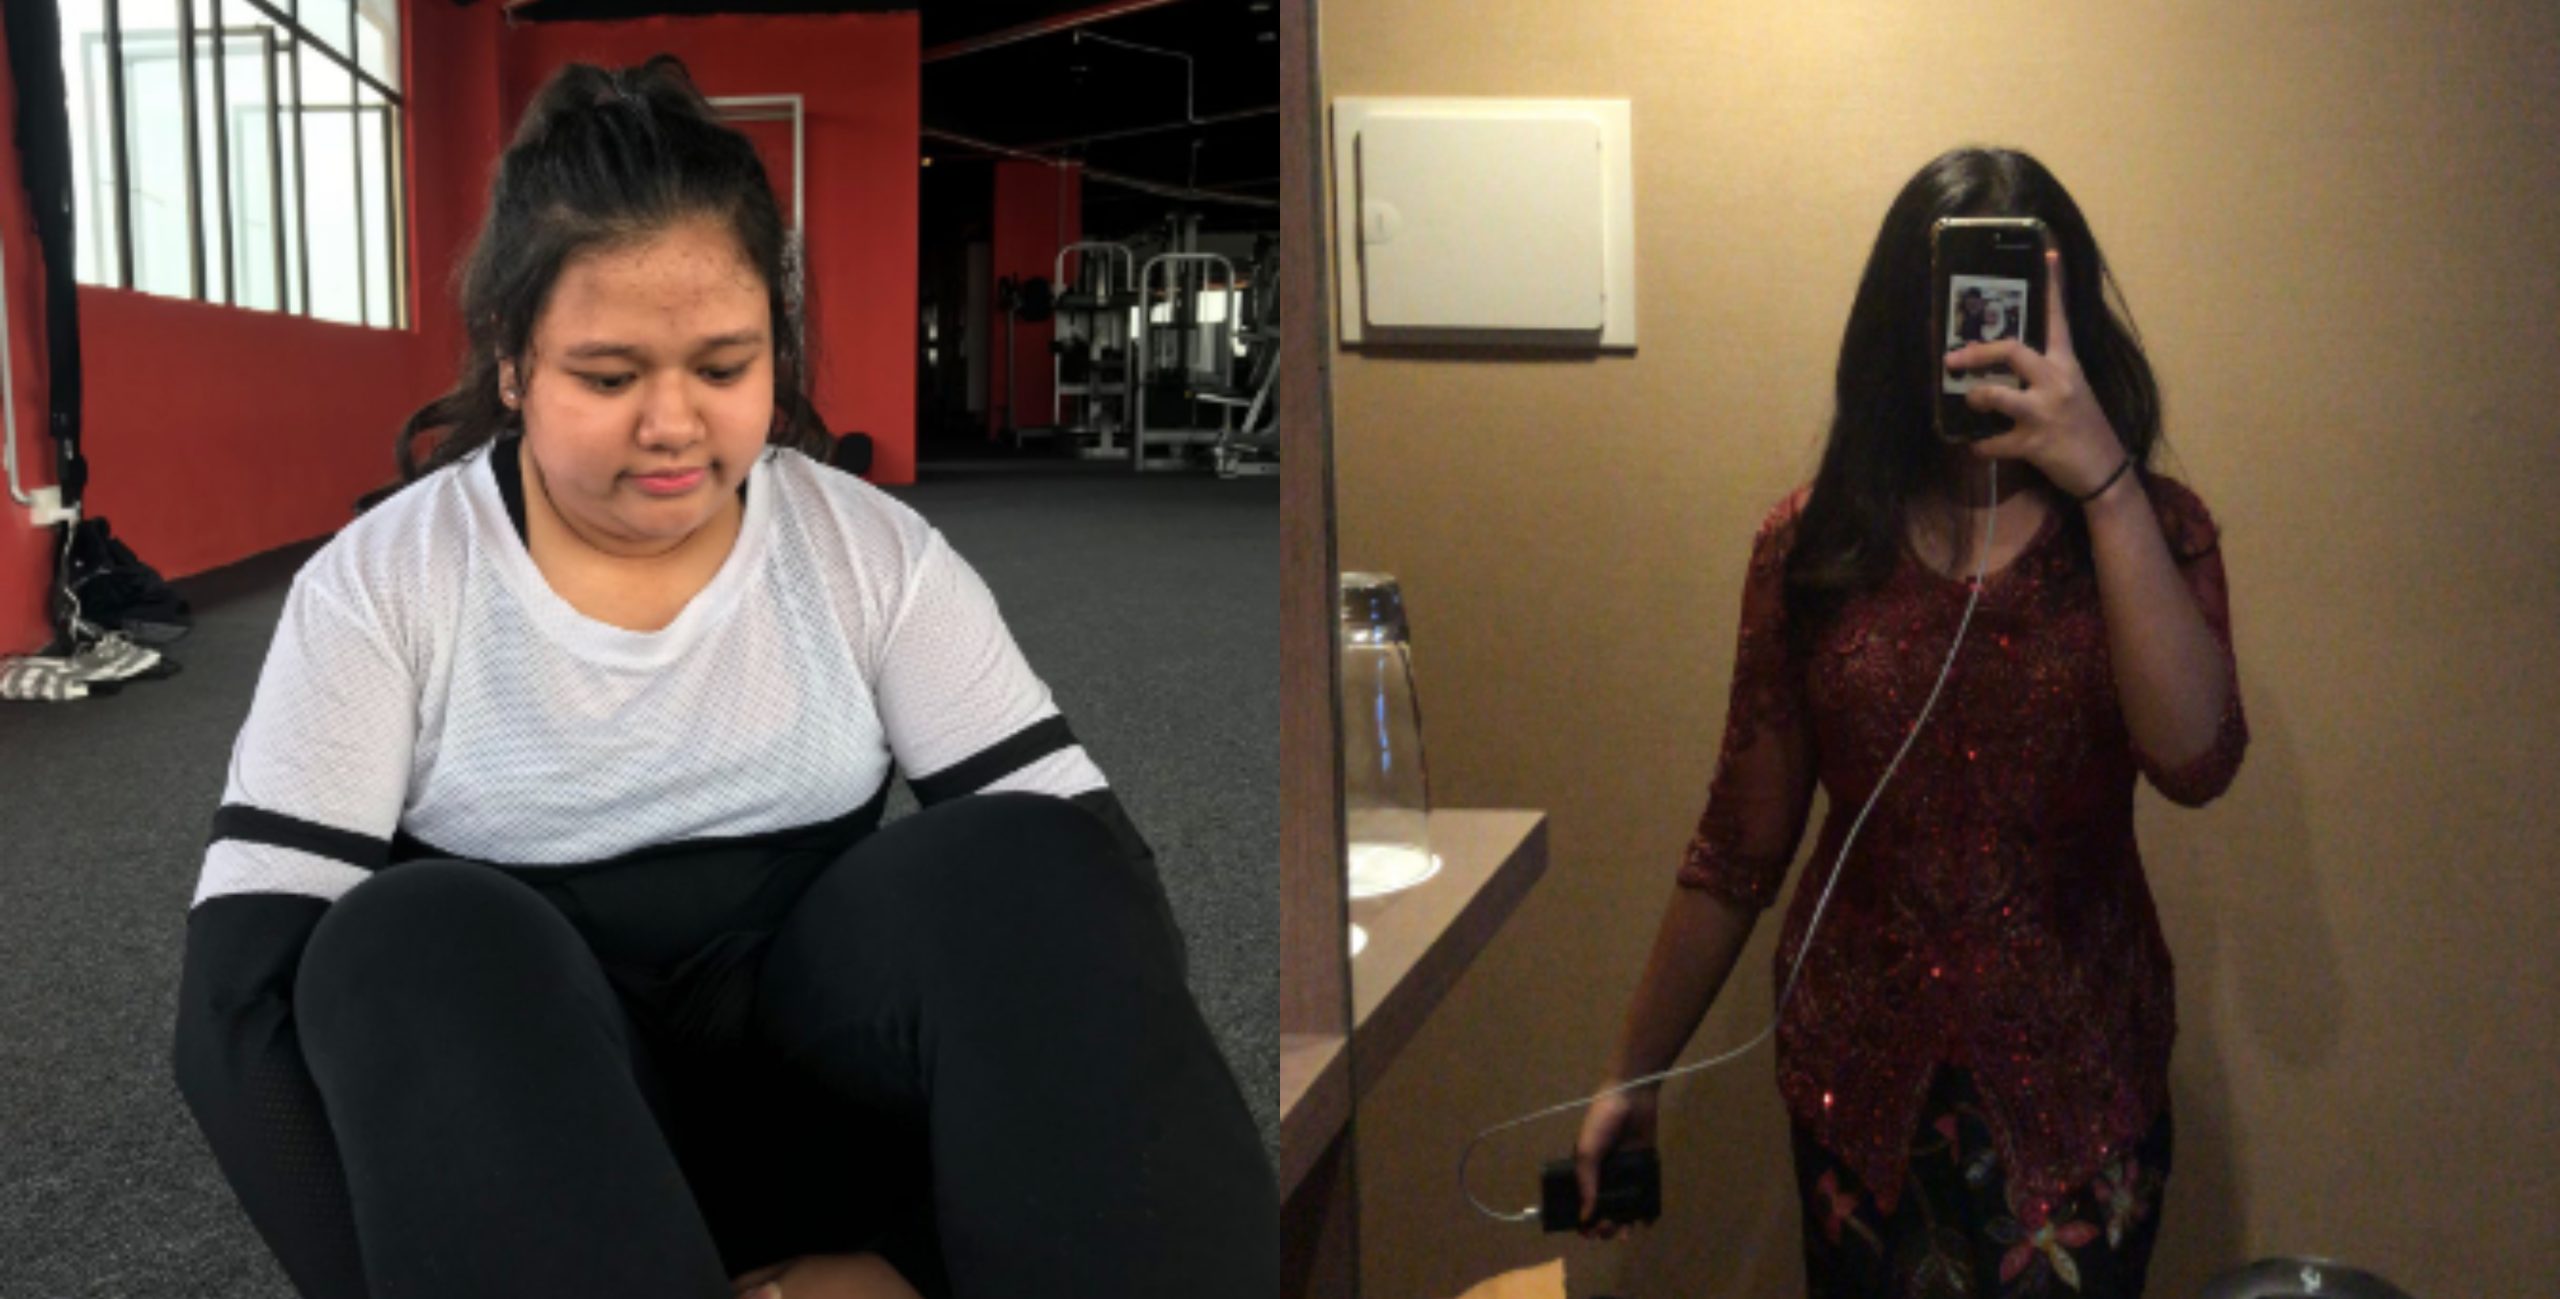 Turun 35kg Dalam 6 Bulan, Gadis Ini Kongsi Tips Ringkas Transformasi Hebat Dirinya